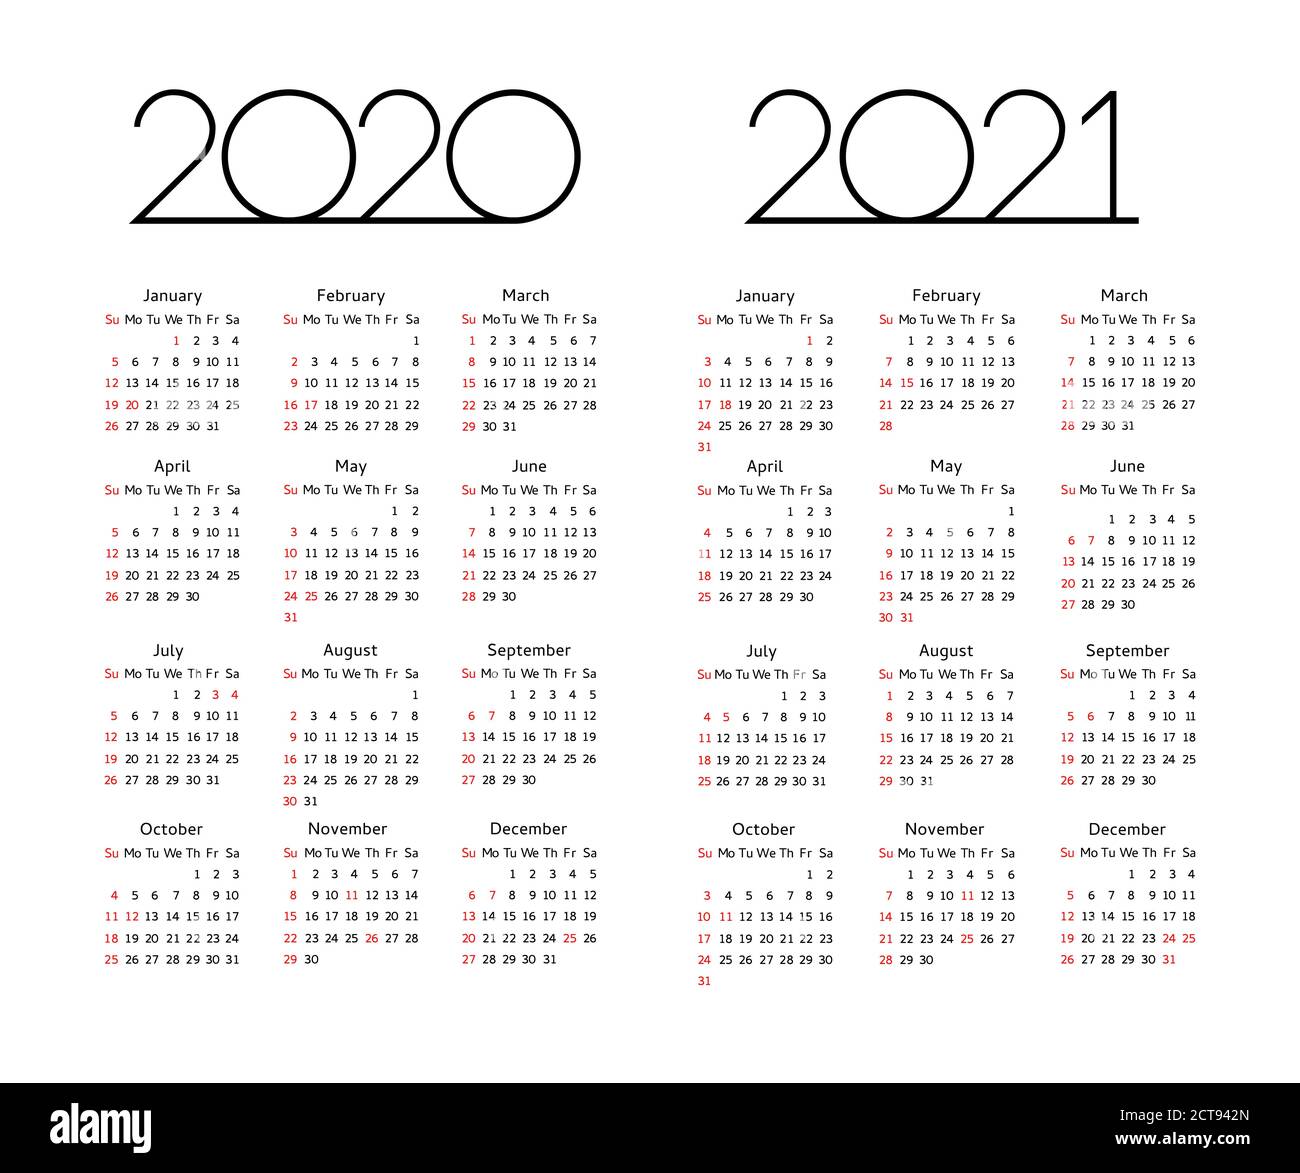 Kalender 2020 2021 Jahr - Vektor-Illustration. Die Woche beginnt am Sonntag. Editierbare Kalendervorlage mit Holiday USA Stock Vektor